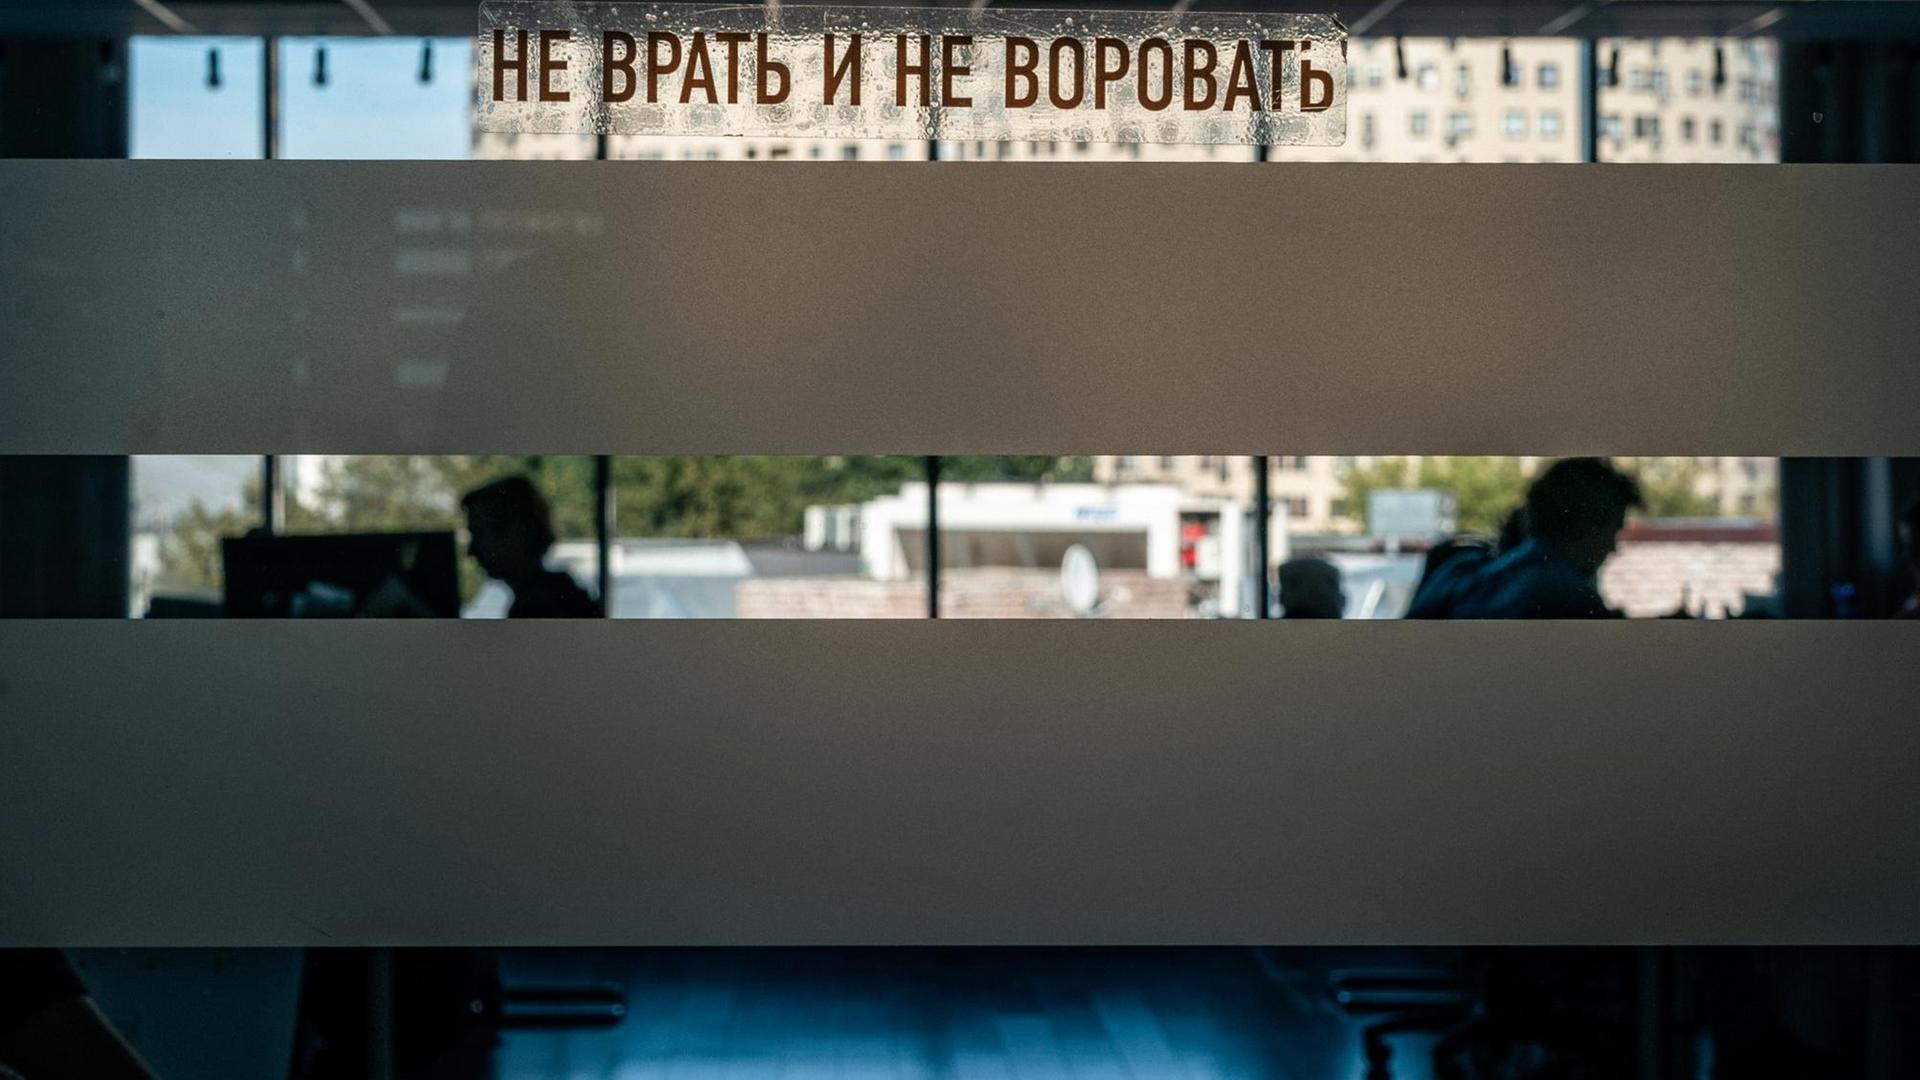 Die Arbeit im Anti-Korruptionsbüro von Kreml-Kritiker Alexej Nawalnyj geht auch nach dem Anschlag auf ihn weiter - "Nicht lügen und nicht stehlen" ist das Motto, 03.09.20